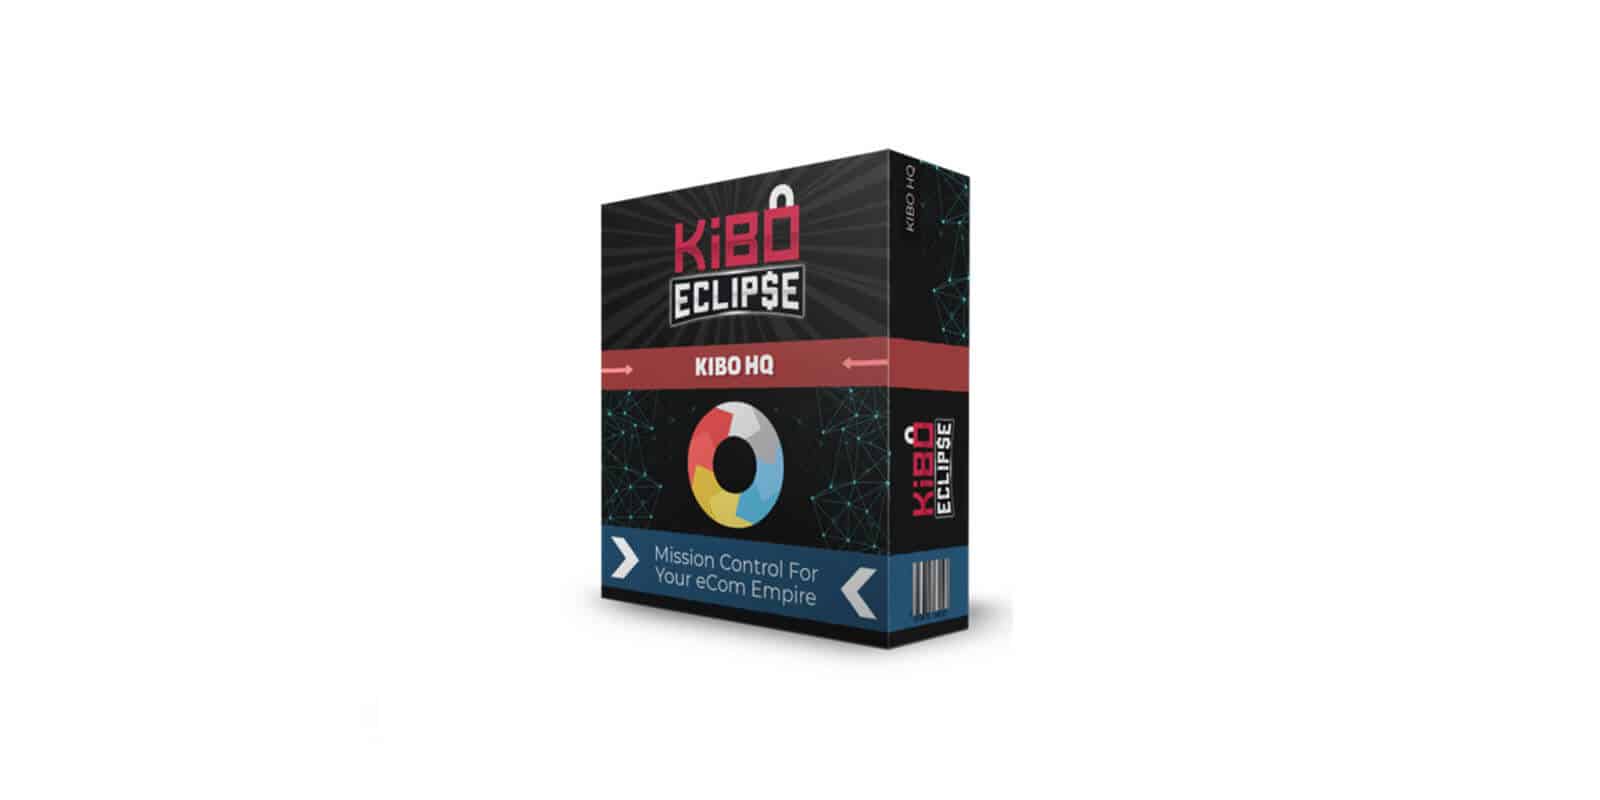 Kibo Eclipse Bonus Kibo HQ